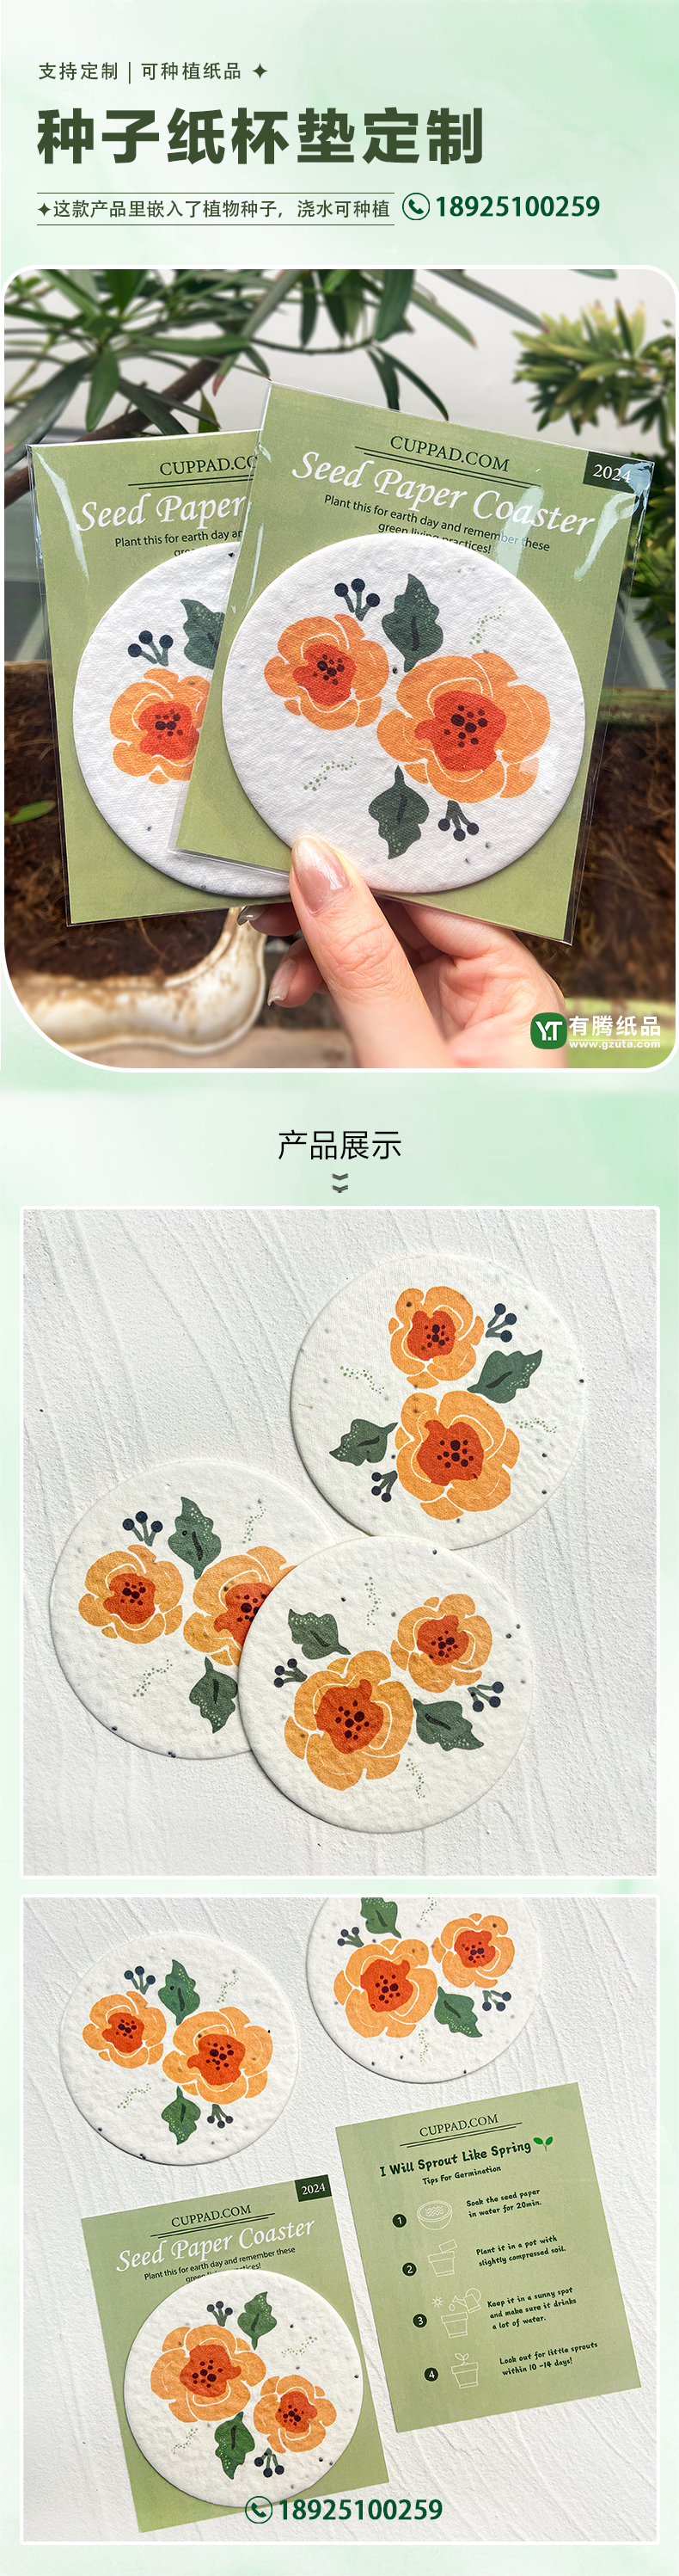 0126种子纸杯垫-中文.jpg